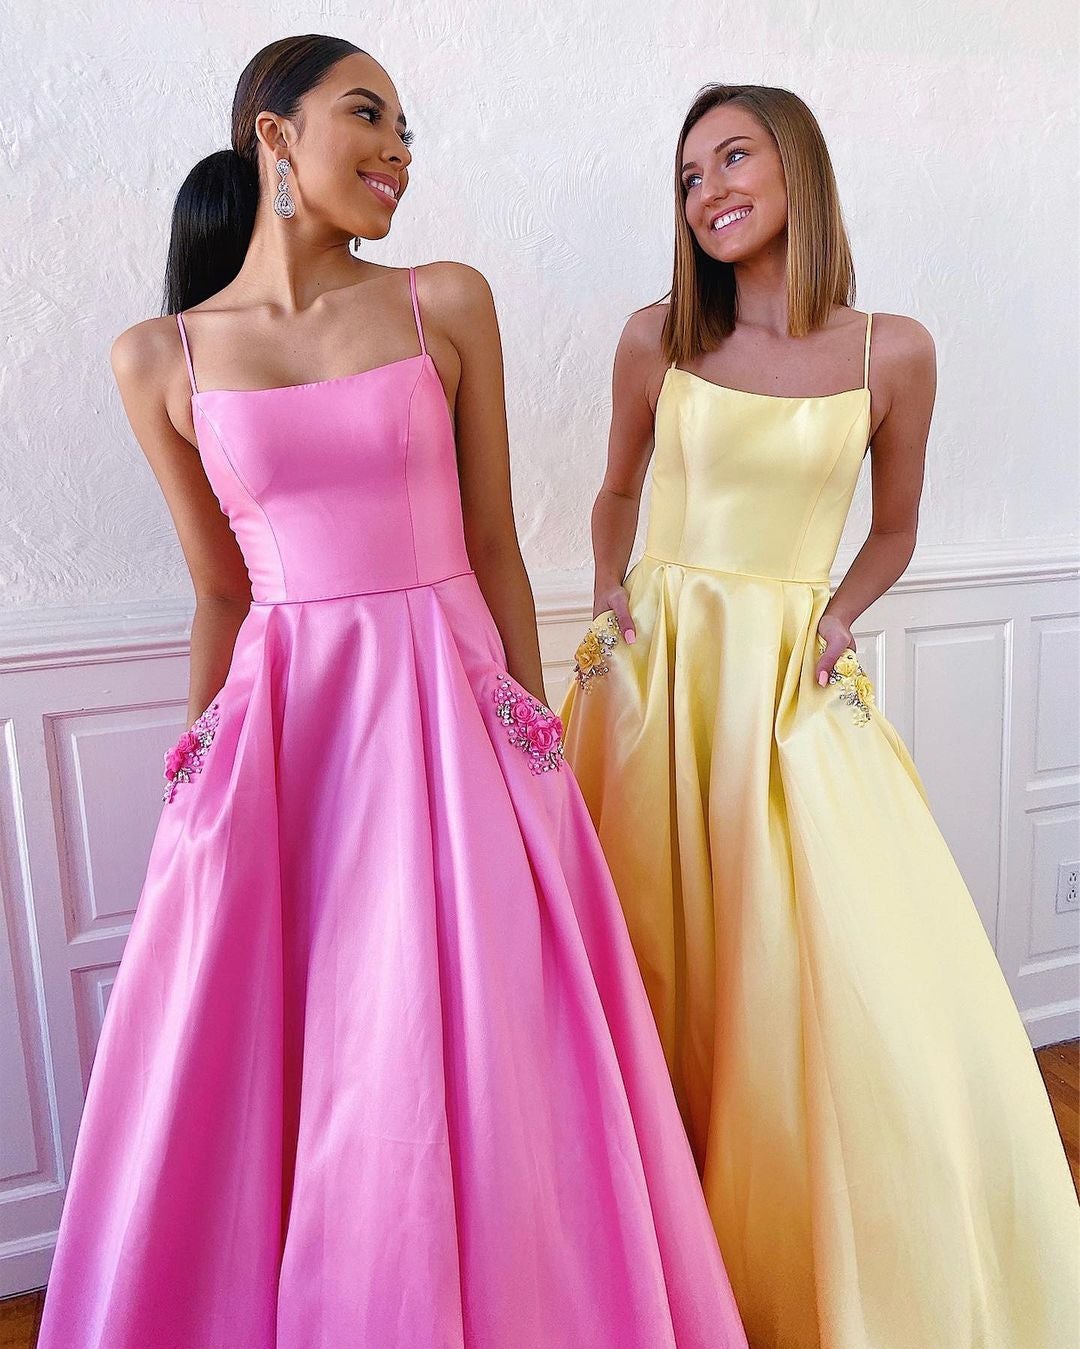 vigocouture-Satin A-Line Spaghetti Strap Prom Dress 20596-Prom Dresses-vigocouture-